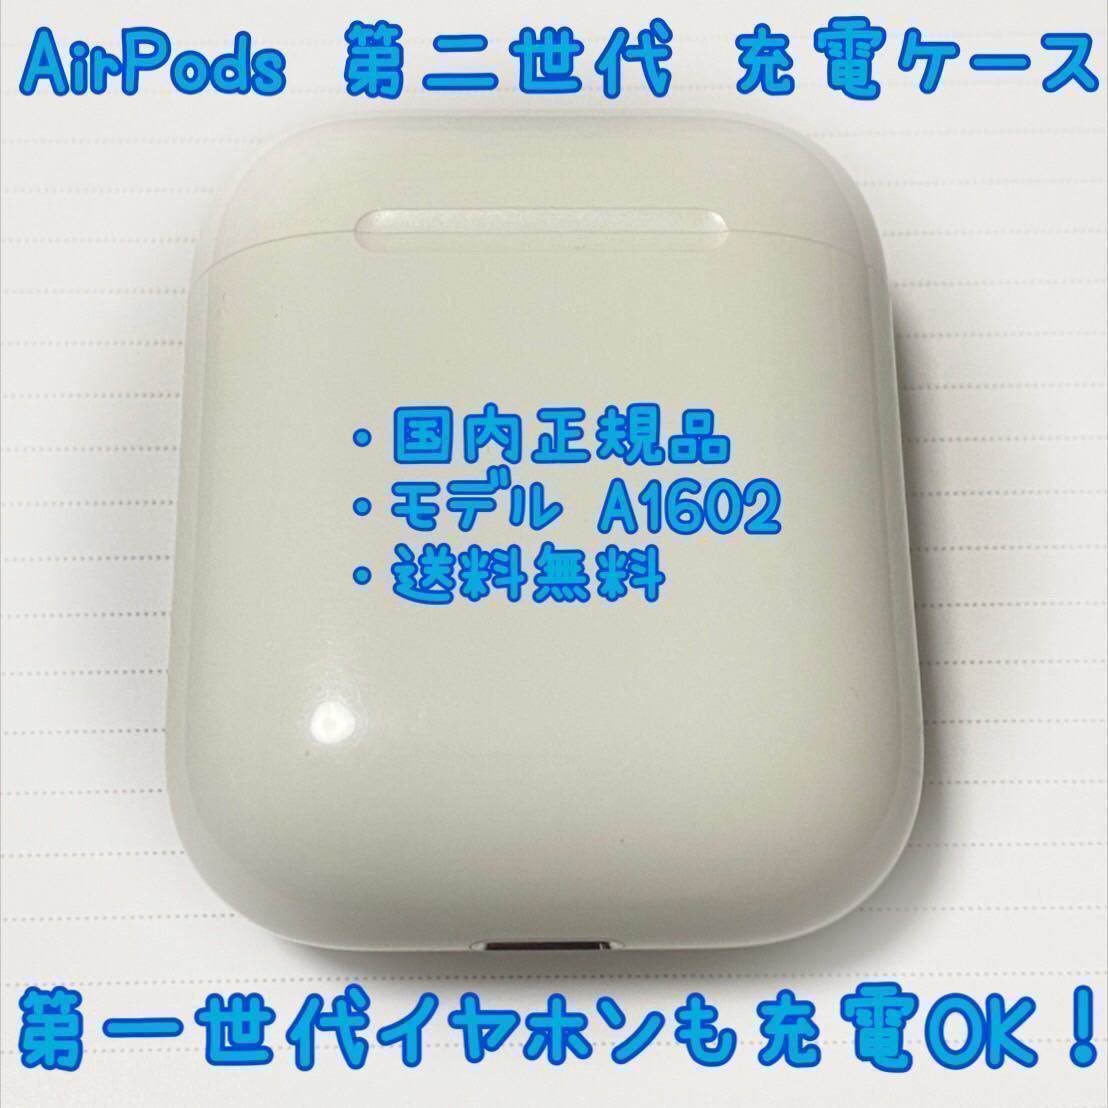 名作 即購入OK Apple air pods 第一世代 充電ケース 正規品